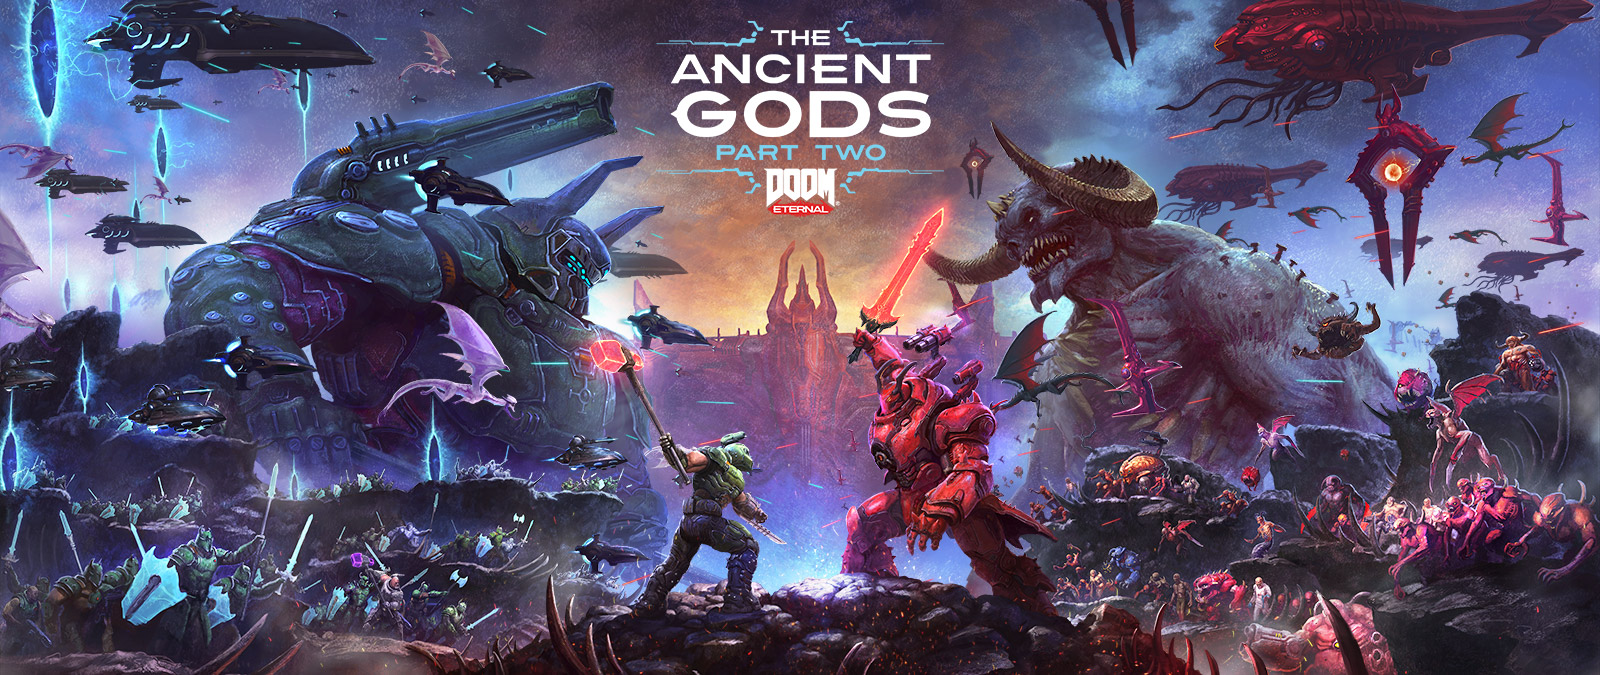 DOOM Eternal: The Ancient Gods Parte 2, una grande battaglia tra Slayer e demoni in un inferno roccioso. 